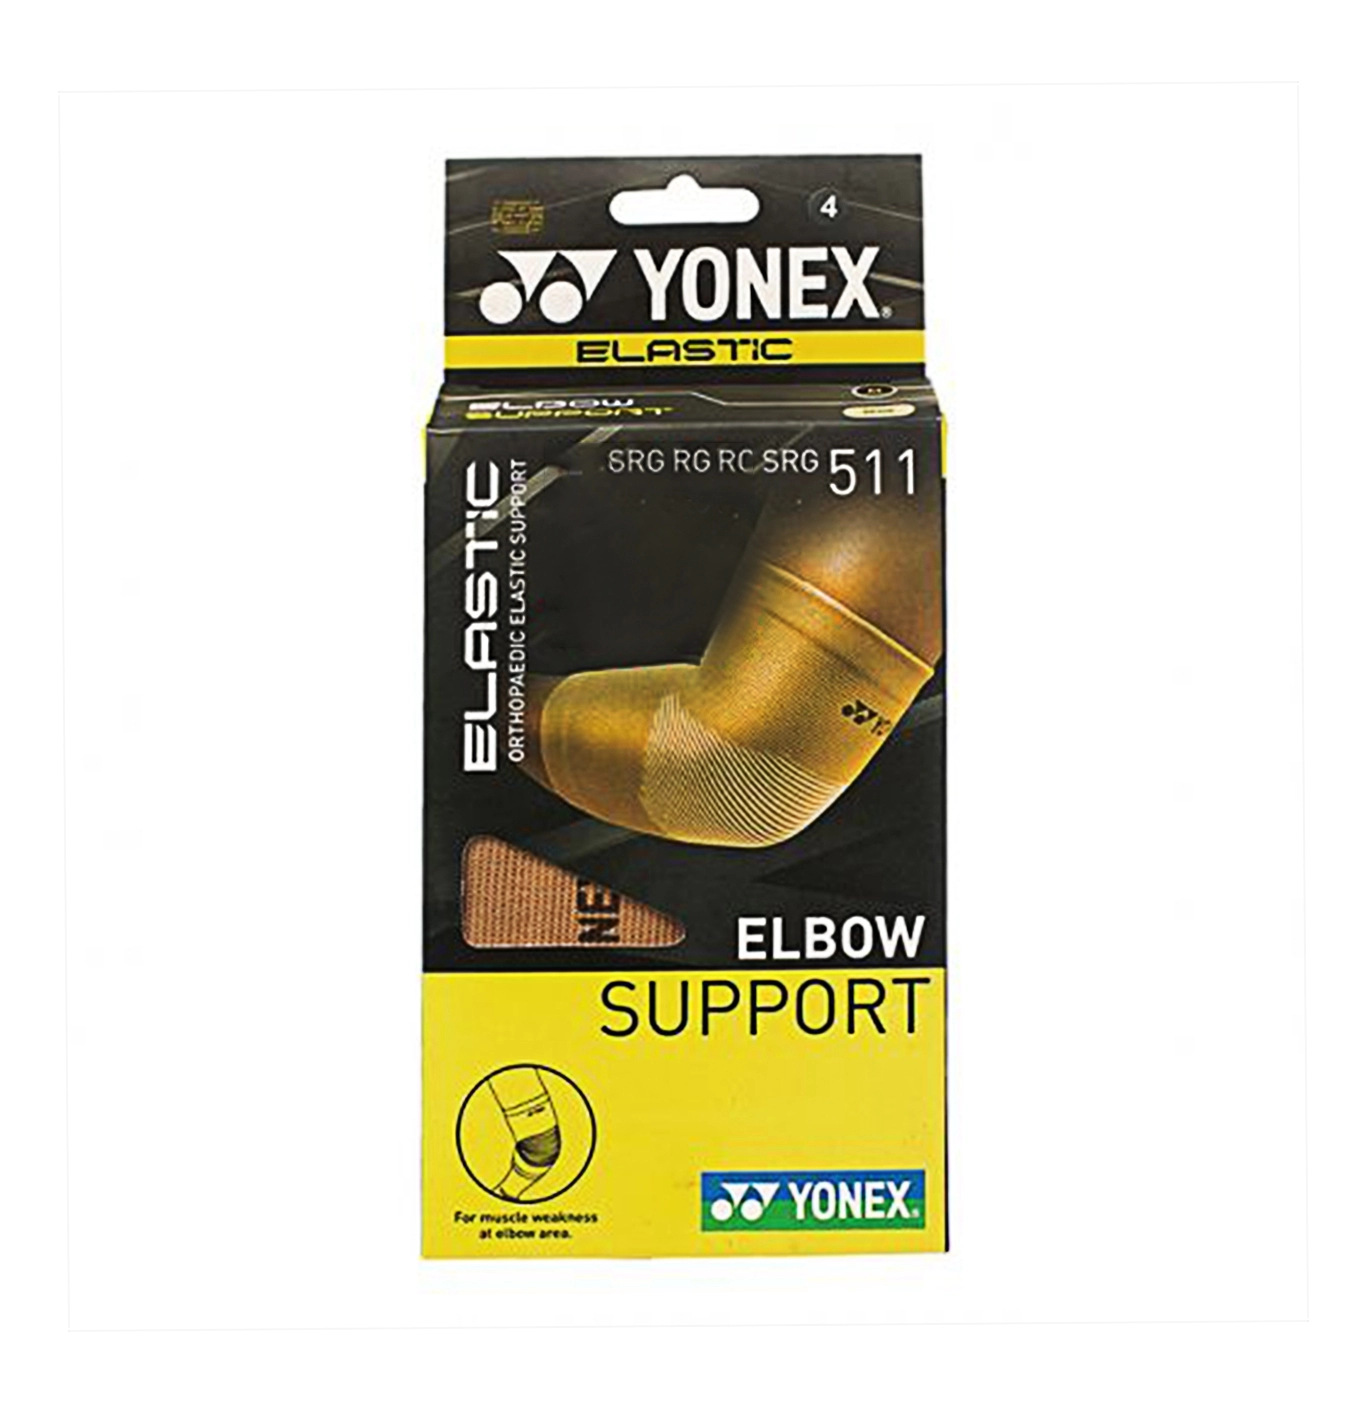 Giới thiệu Băng khủy tay Yonex SRG511 - Be chính hãng